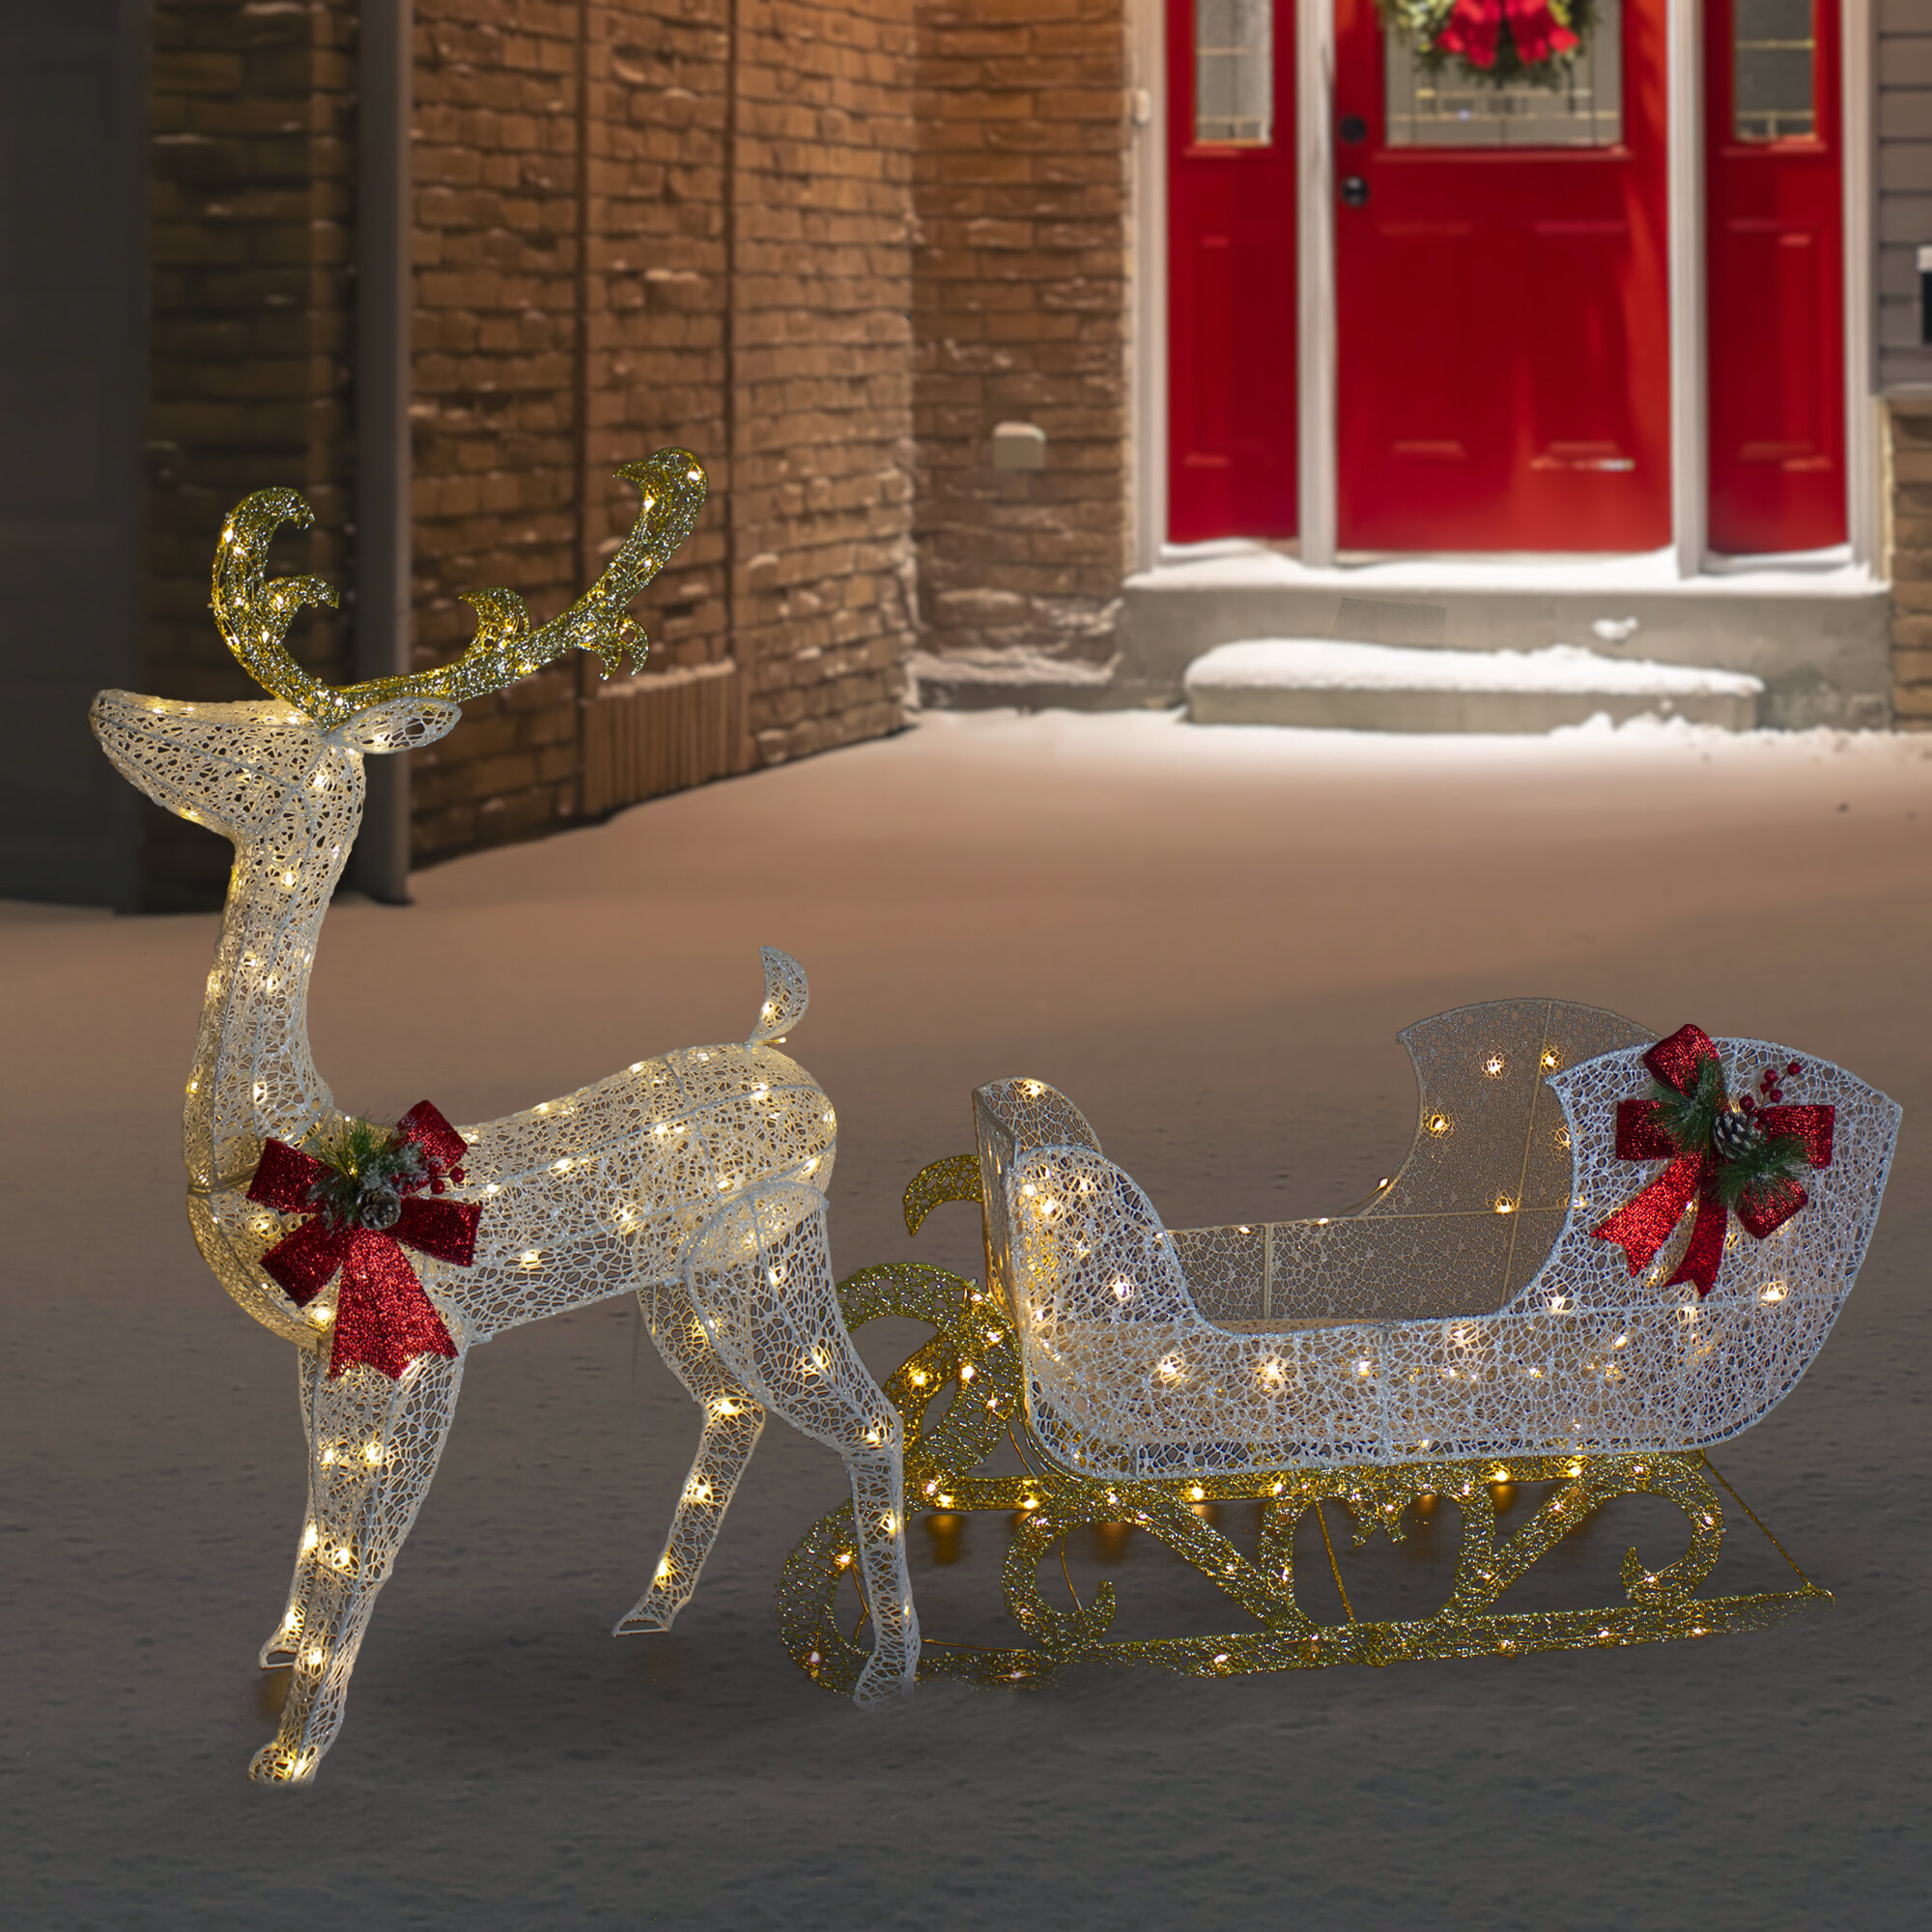 Northlight Décoration de Noël ours polaire blanc 2 ' - Wayfair Canada